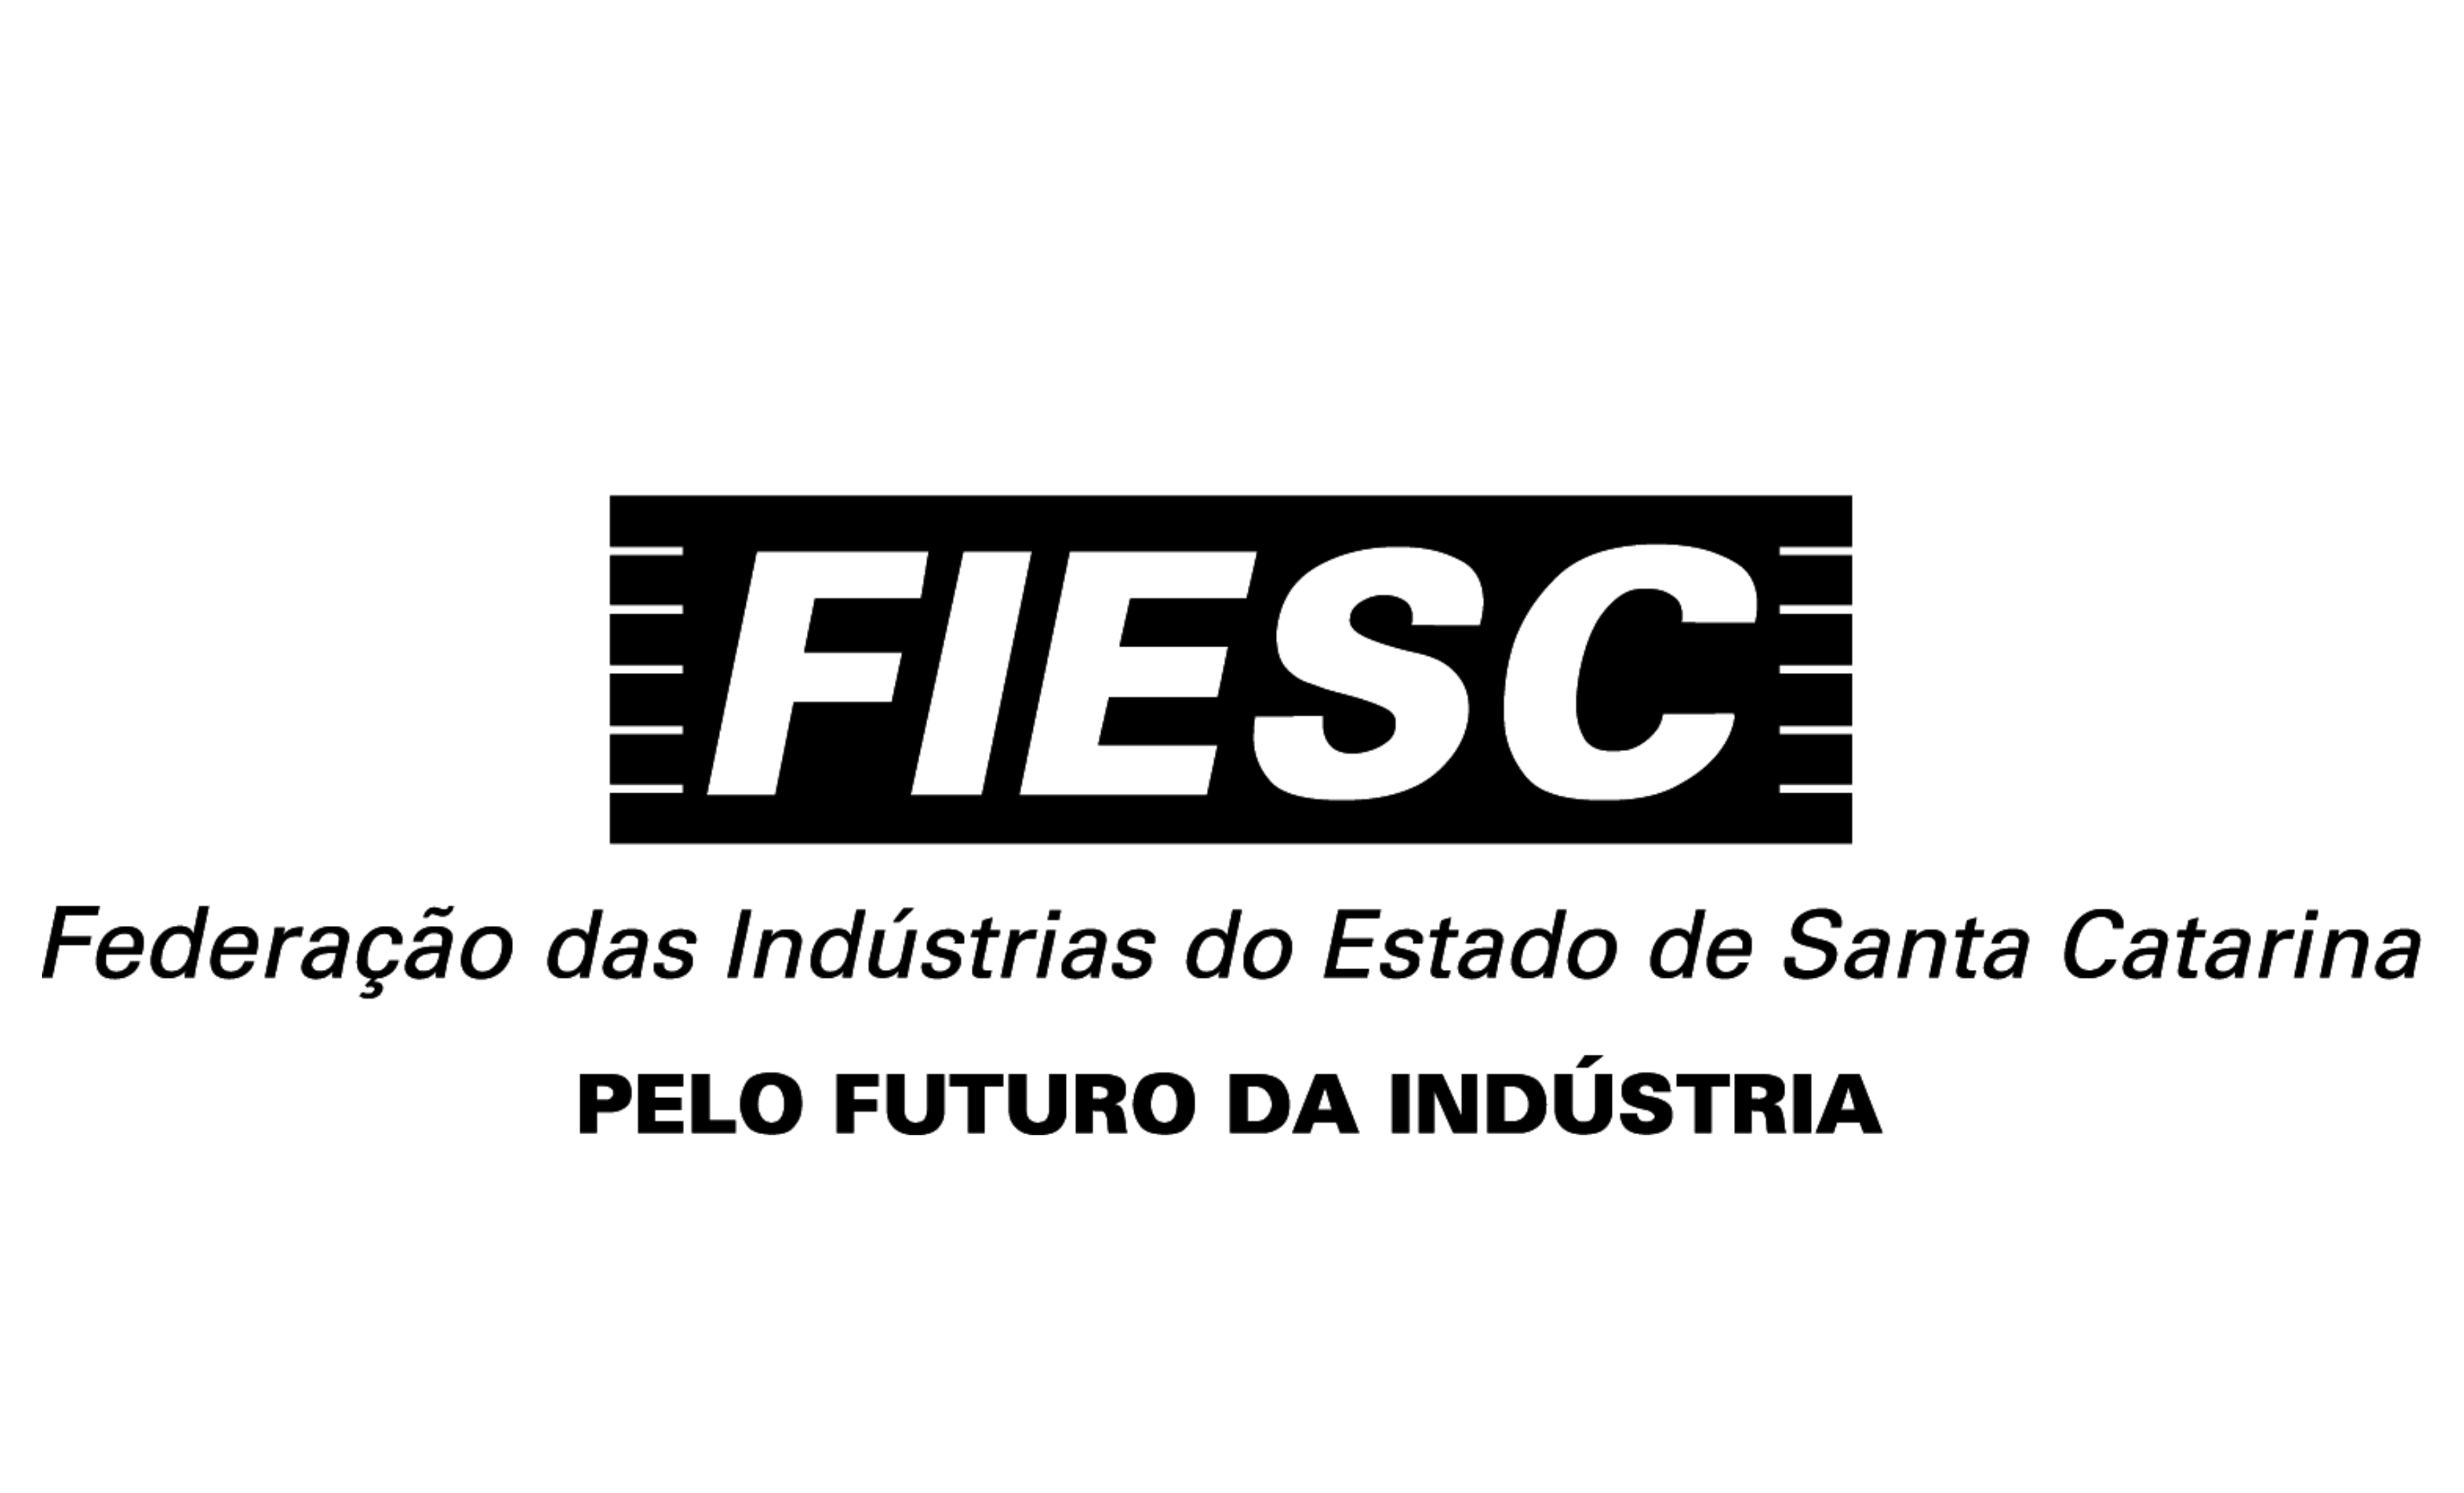 Logo Fiesc